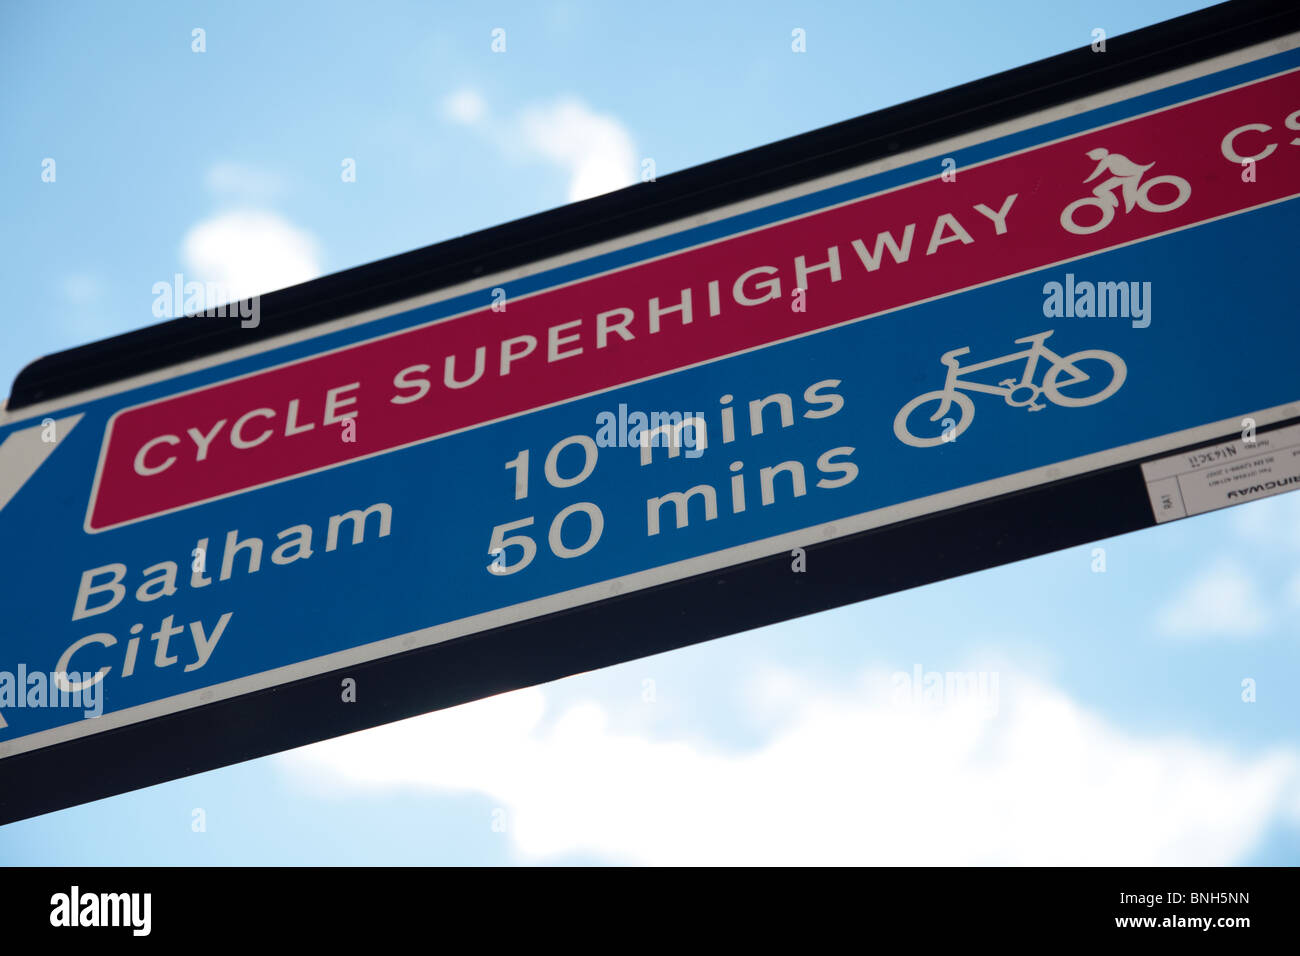 Un cartello sulla Barclays Cycle superstrada CS7 che corre tra la città di Londra e Colliers Wood in Merton, Londra. Foto Stock